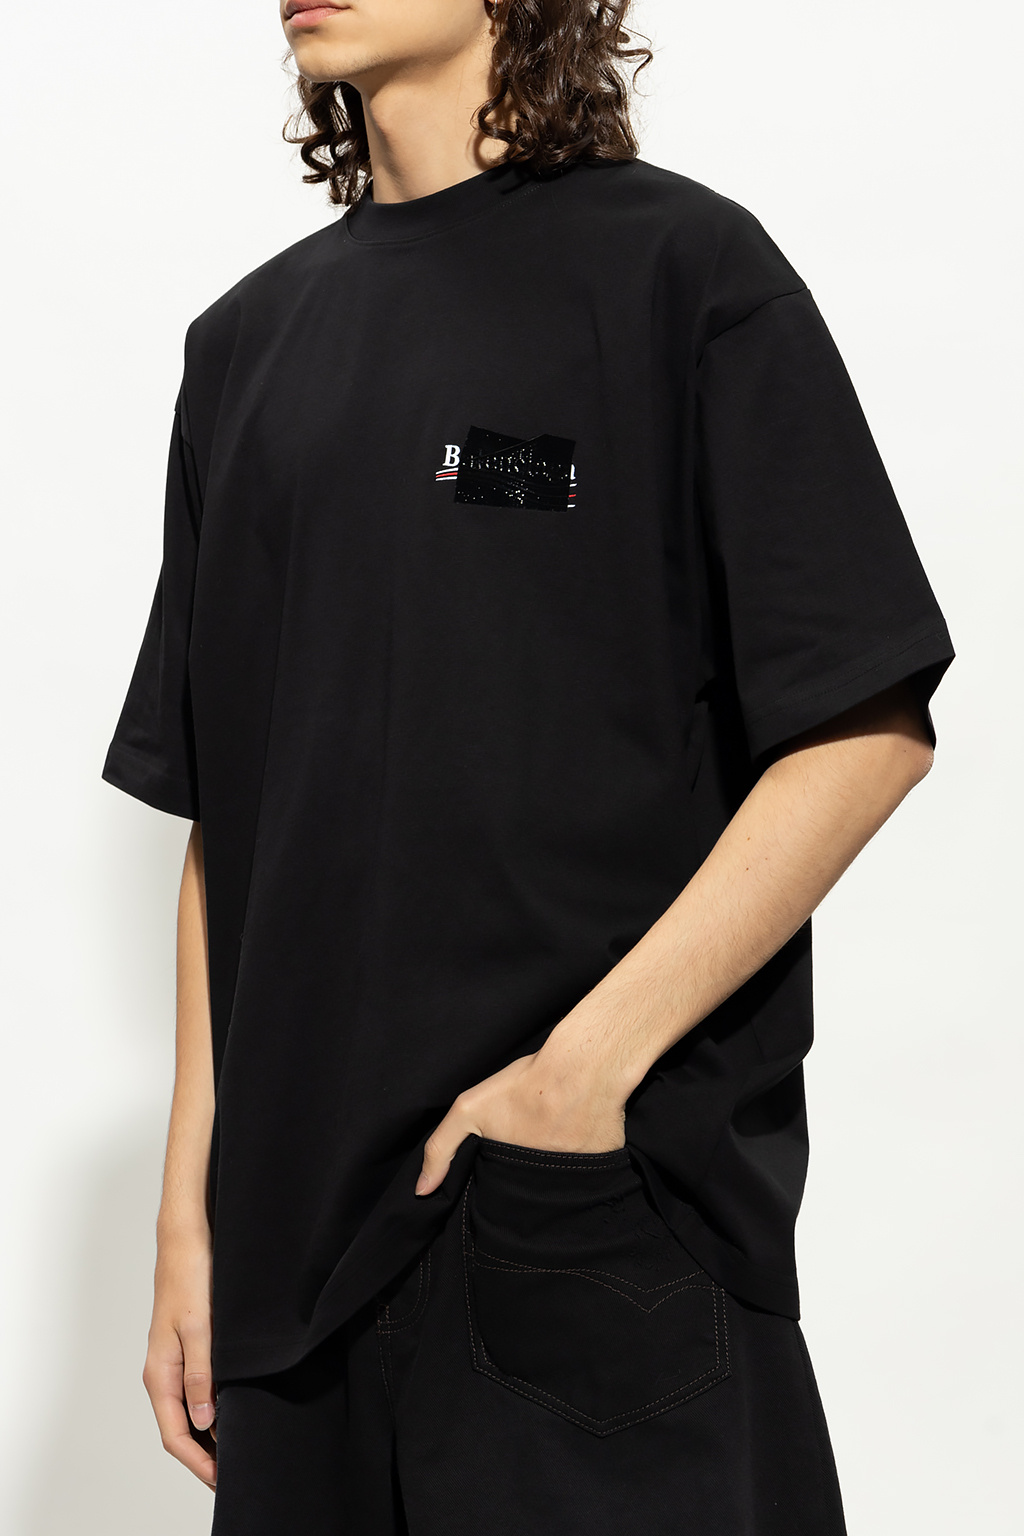 激安正規 BALENCIAGA Staff shirt Black 34 ecousarecycling.com